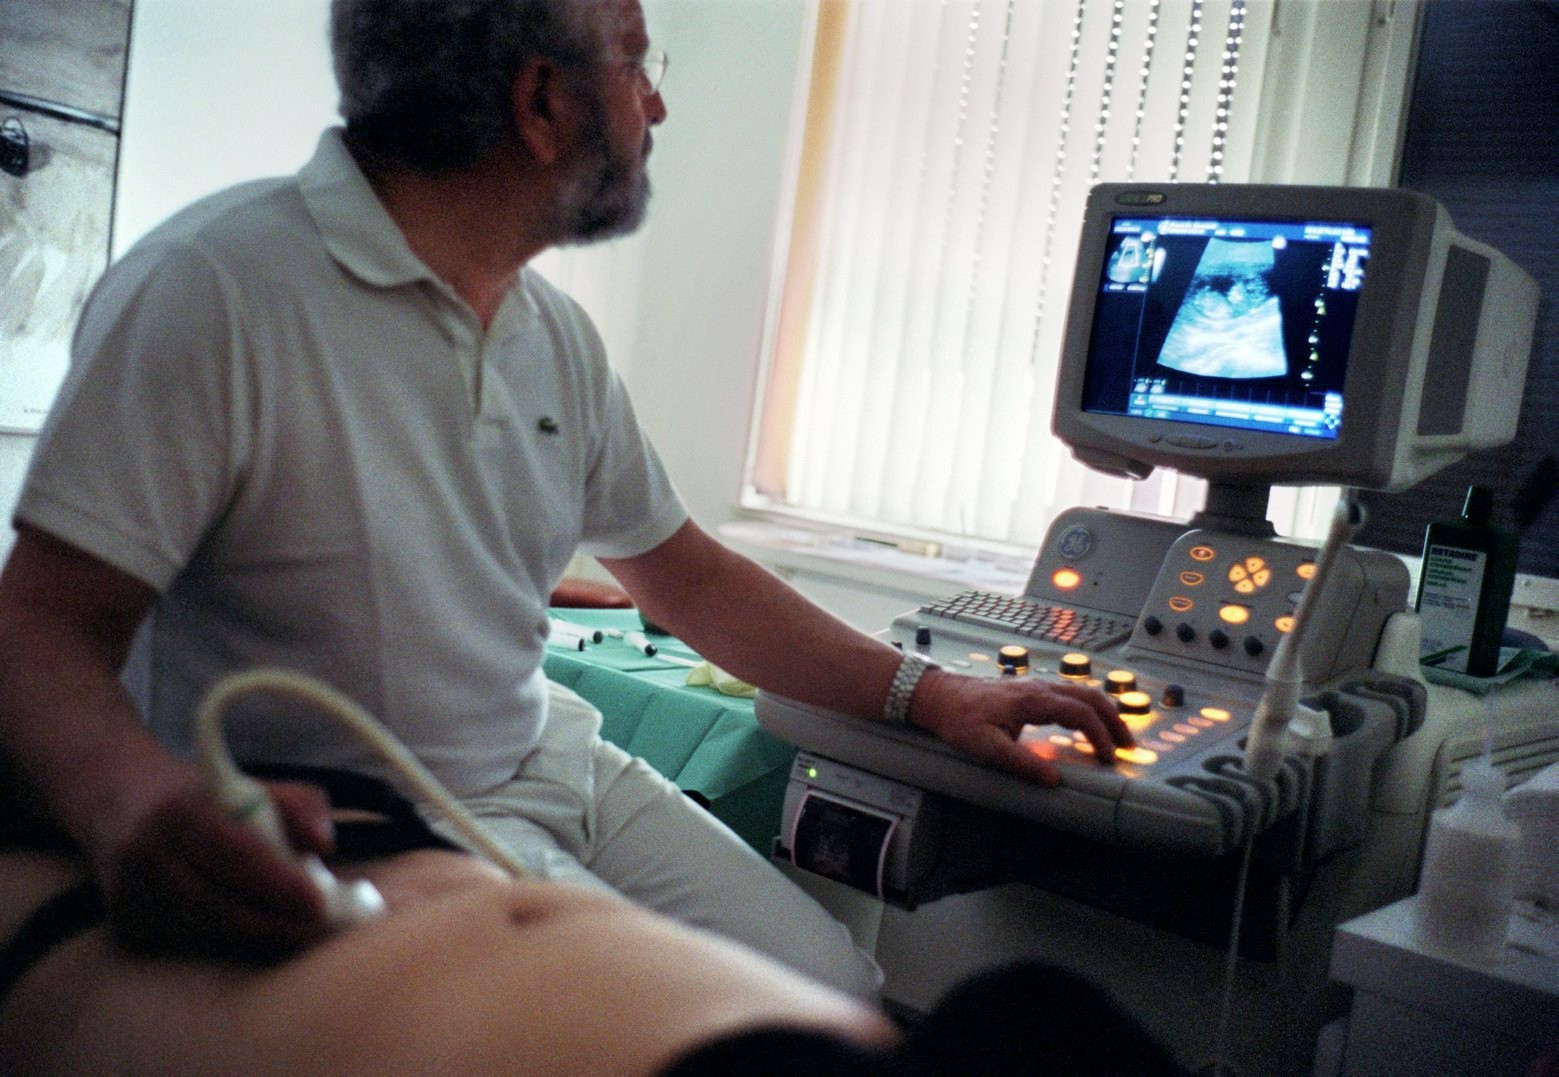 ARCHIV --- Ein schwangere Frau beim Ultraschall-Untersuch, aufgenommen im Juni 2001. - Jeder schwangeren Frau soll kuenftig ein HIV-Test nahe gelegt werden. Wie das Bundesamt fuer Gesundheit (BAG) in seinem juengsten Bulletin am Montag, 21. Mai 2007 schreibt, sollen Tests allgemein nicht mehr nur auf Wunsch der Patienten durchgefuehrt werden. Auch bei gewissen Krankheiten soll die Initiative vom Arzt aus gehen. (KEYSTONE/Gaetan Bally) SCHWEIZ SCHWANGERE HIV-TEST